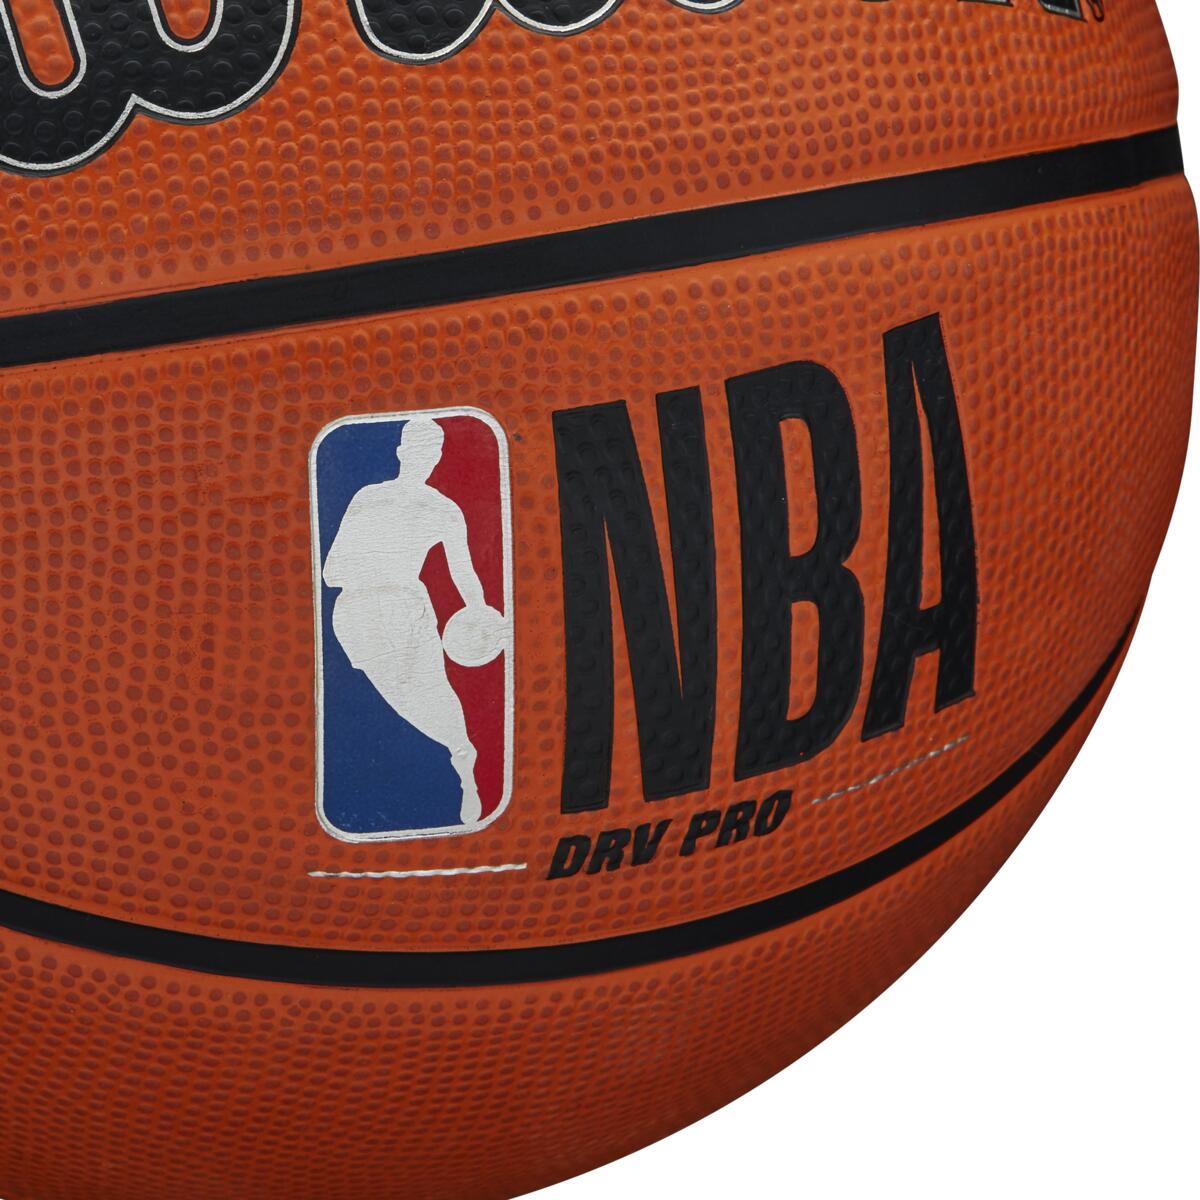 Bola de Basquete NBA DRV Pro #7